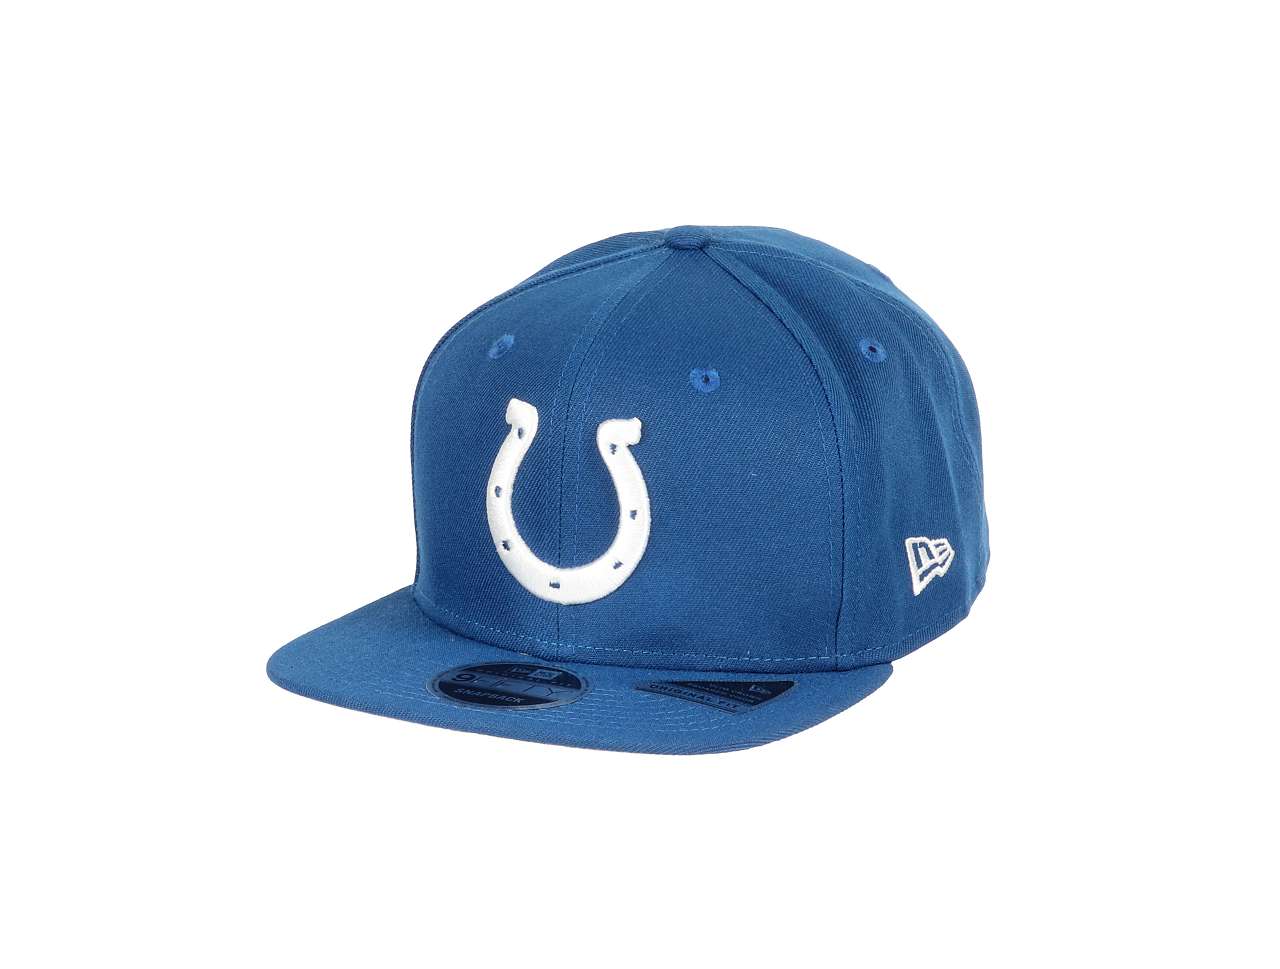 Indianapolis Colts NFL Blue 9Fifty Original Fit Snapback Cap New Era